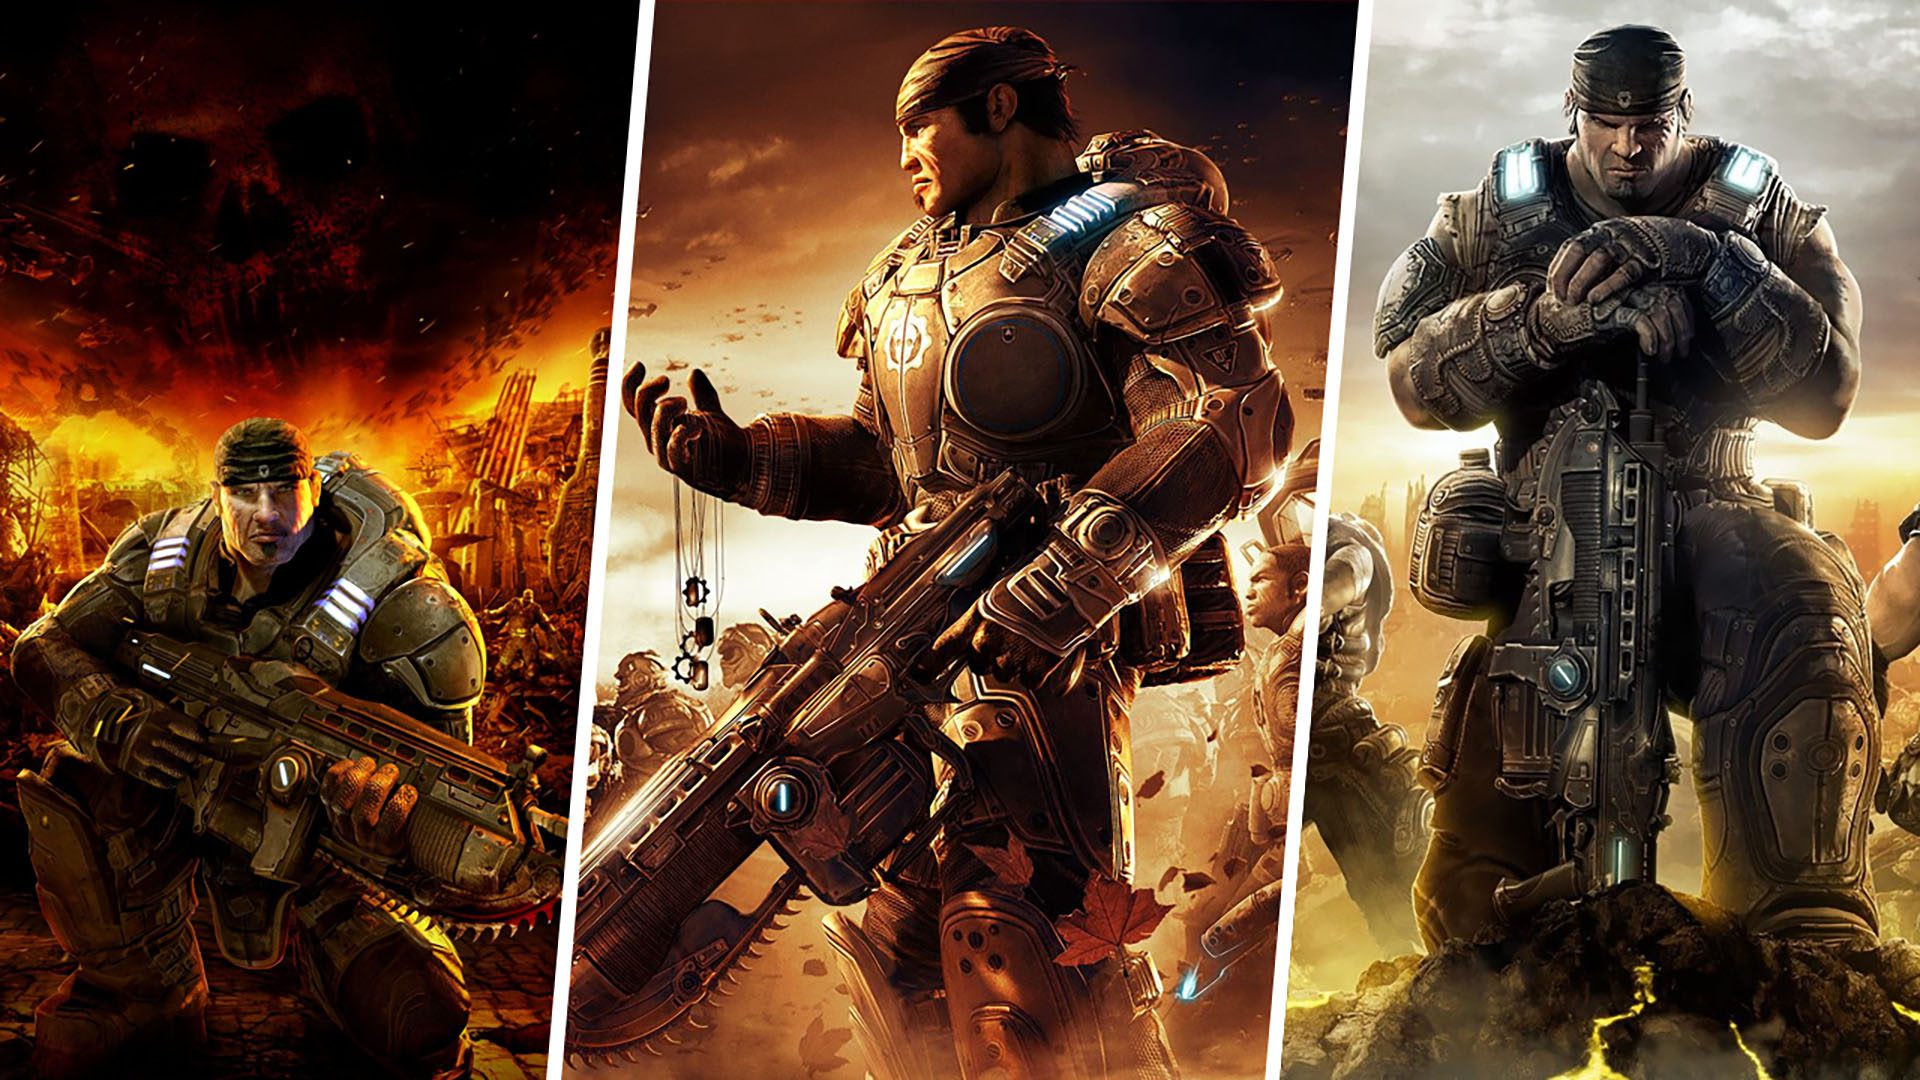 Gears of War - Metacritic